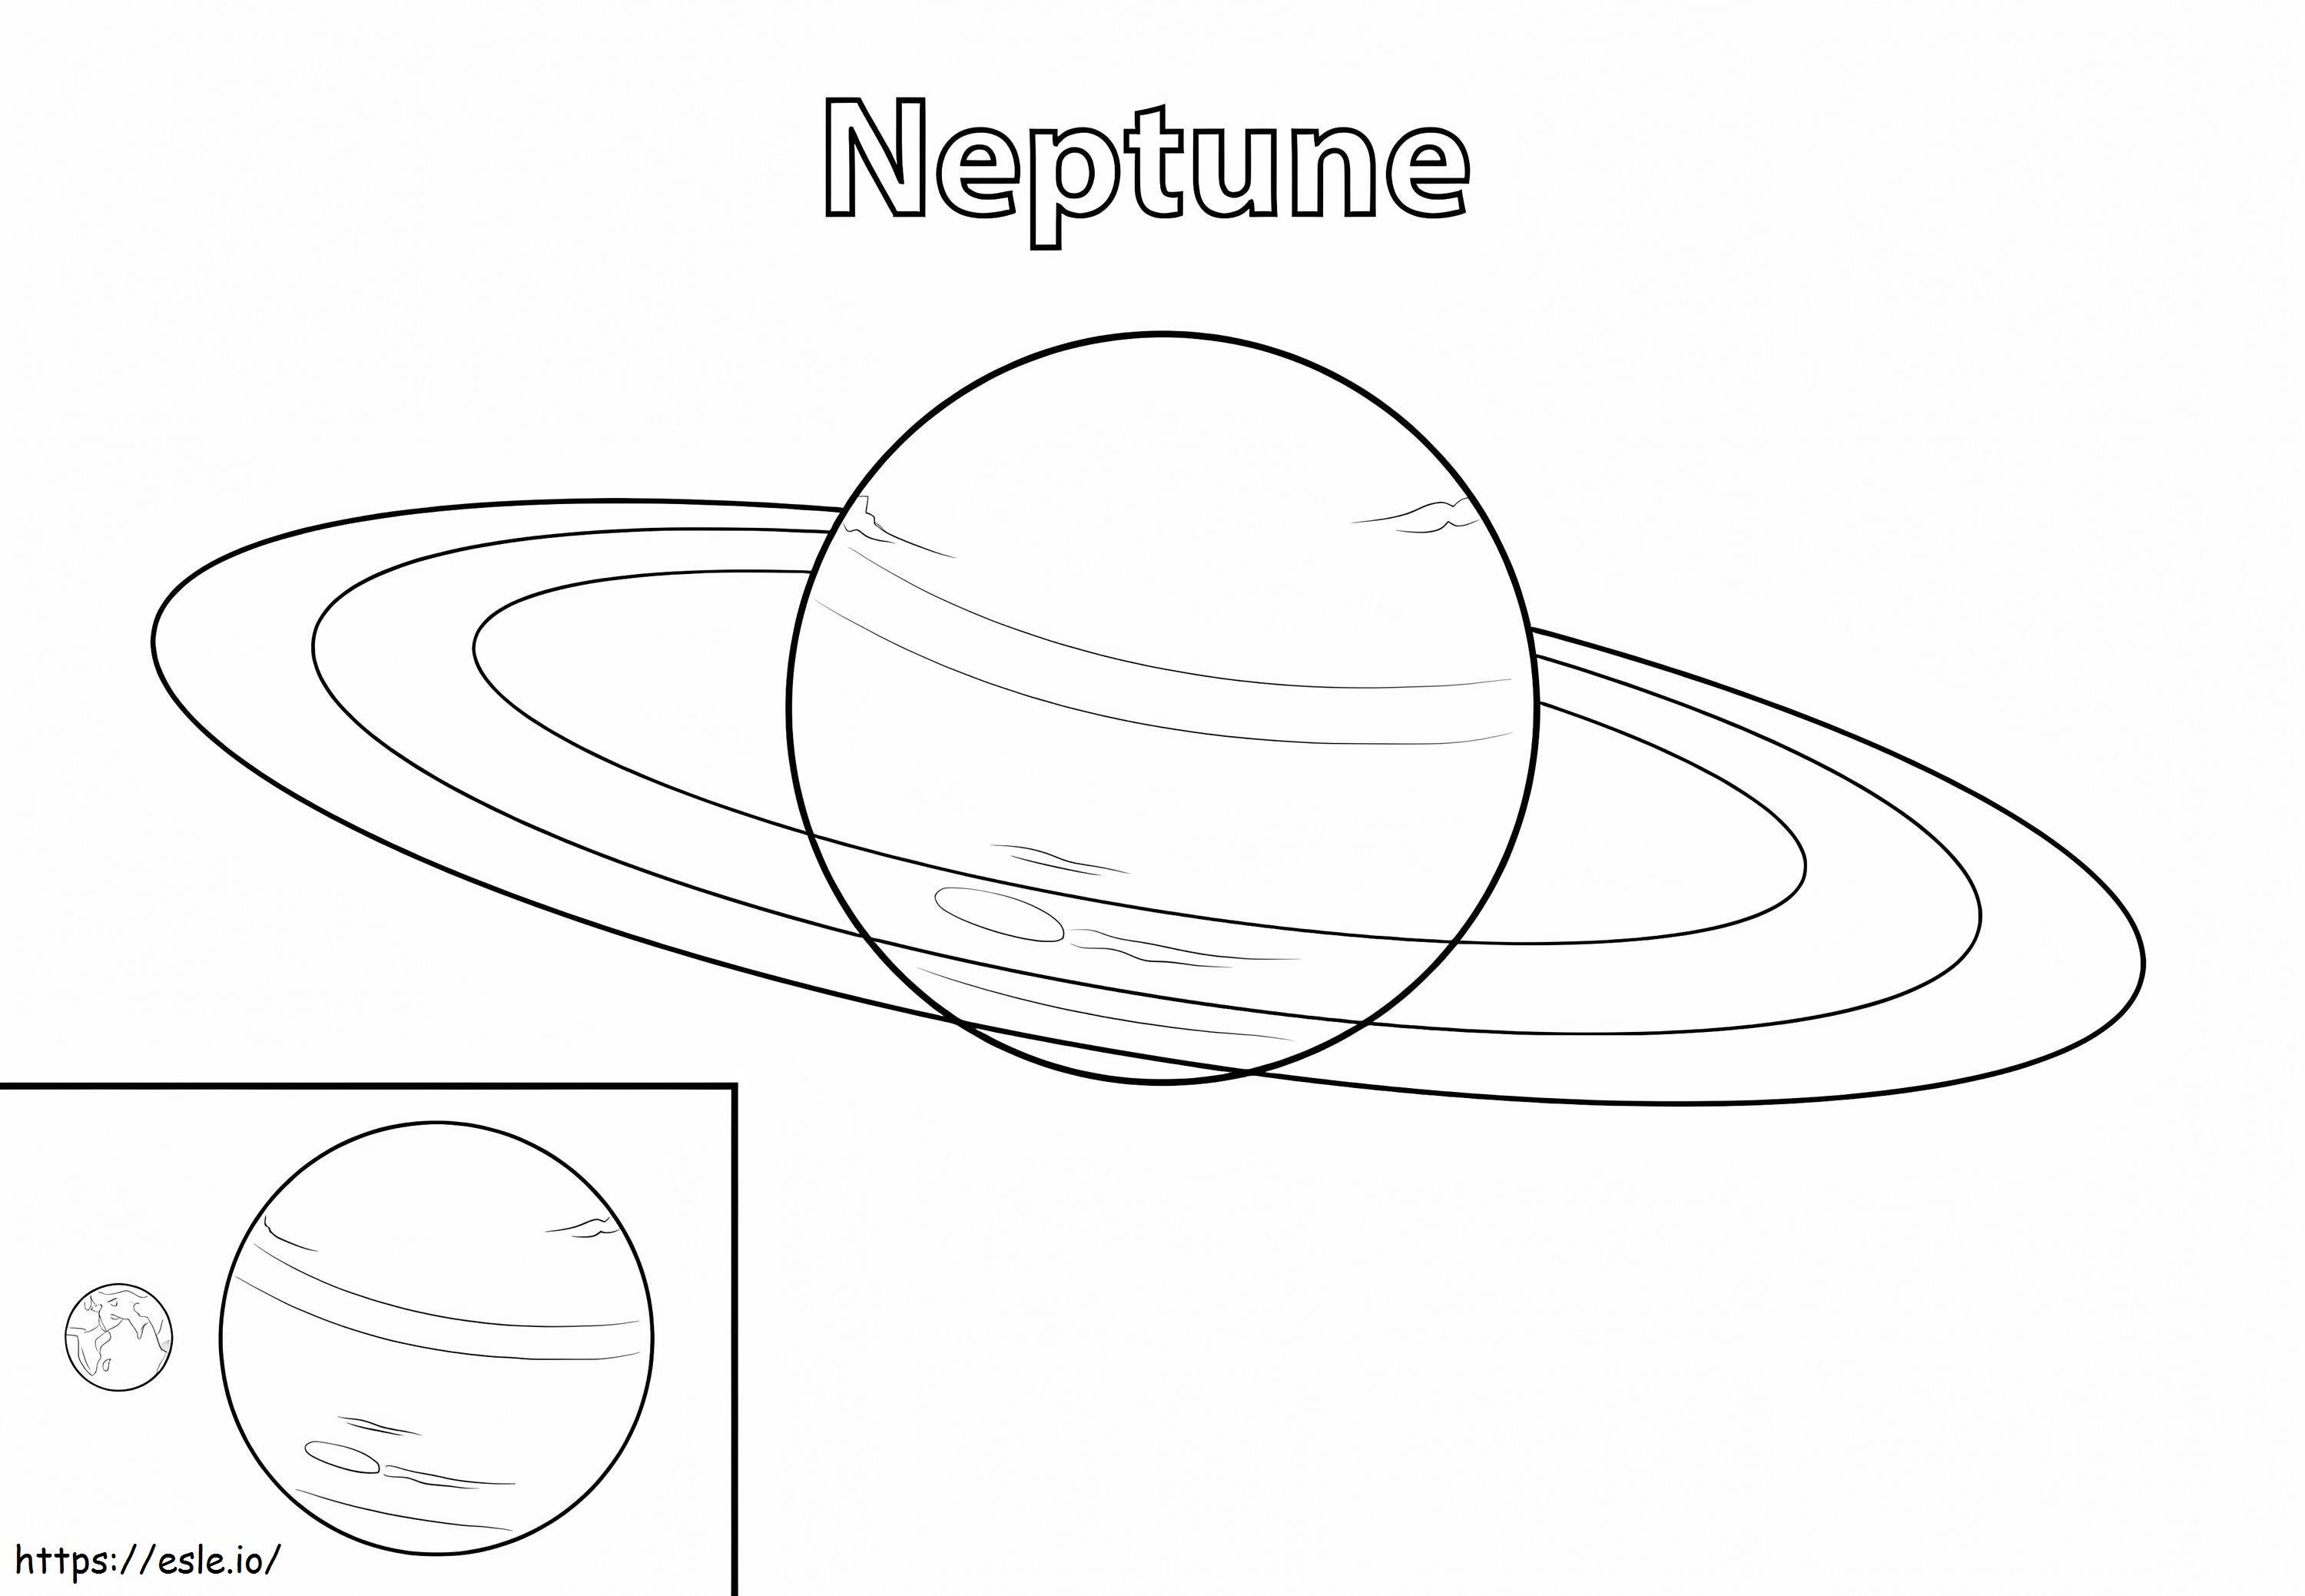 Neptun-Planet ausmalbilder